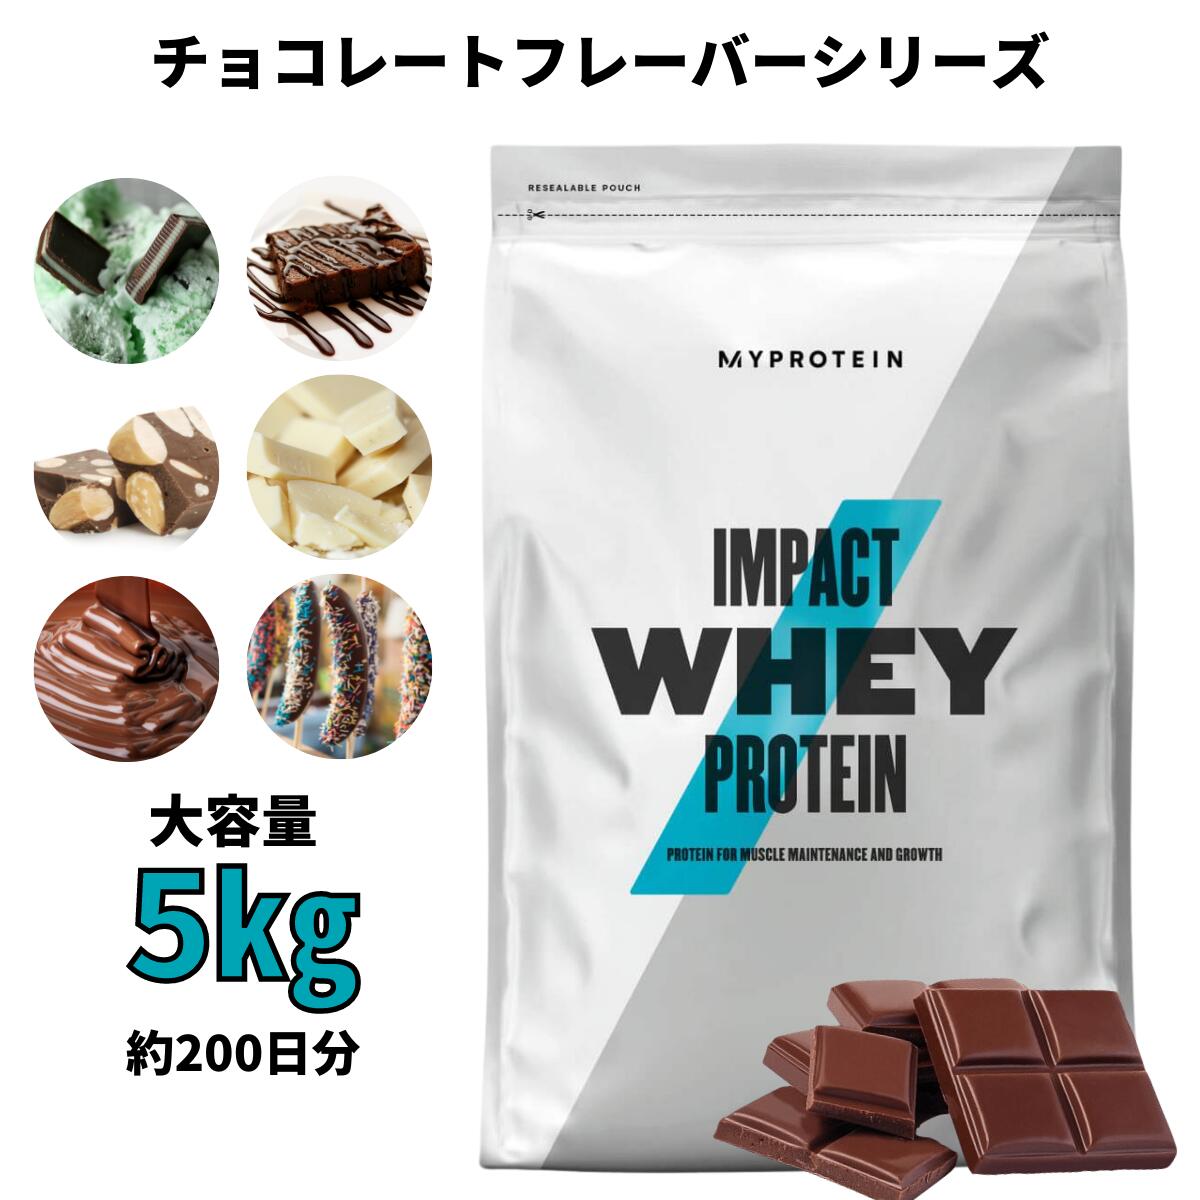 8709円 人気アイテム 5kg ナチュラルチョコレート味 マイプロテイン Impact ホエイプロテイン